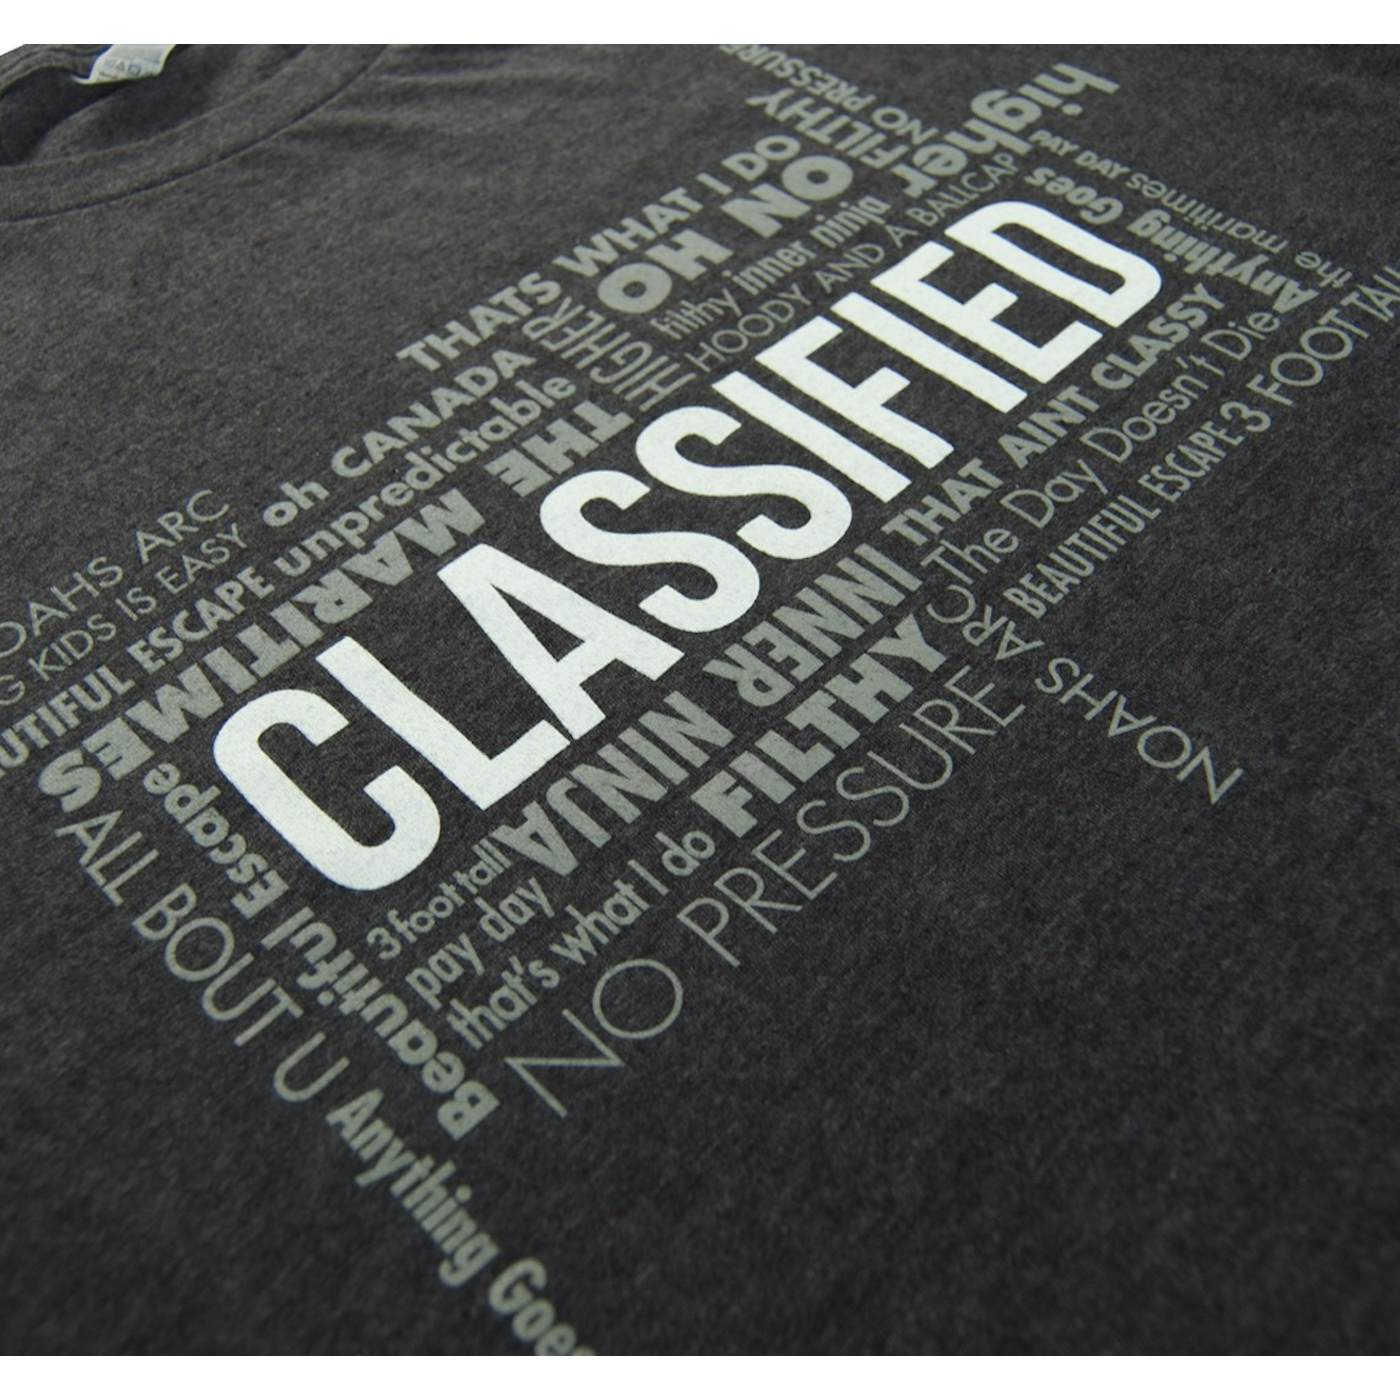 Classified Word Scramble T-Shirt